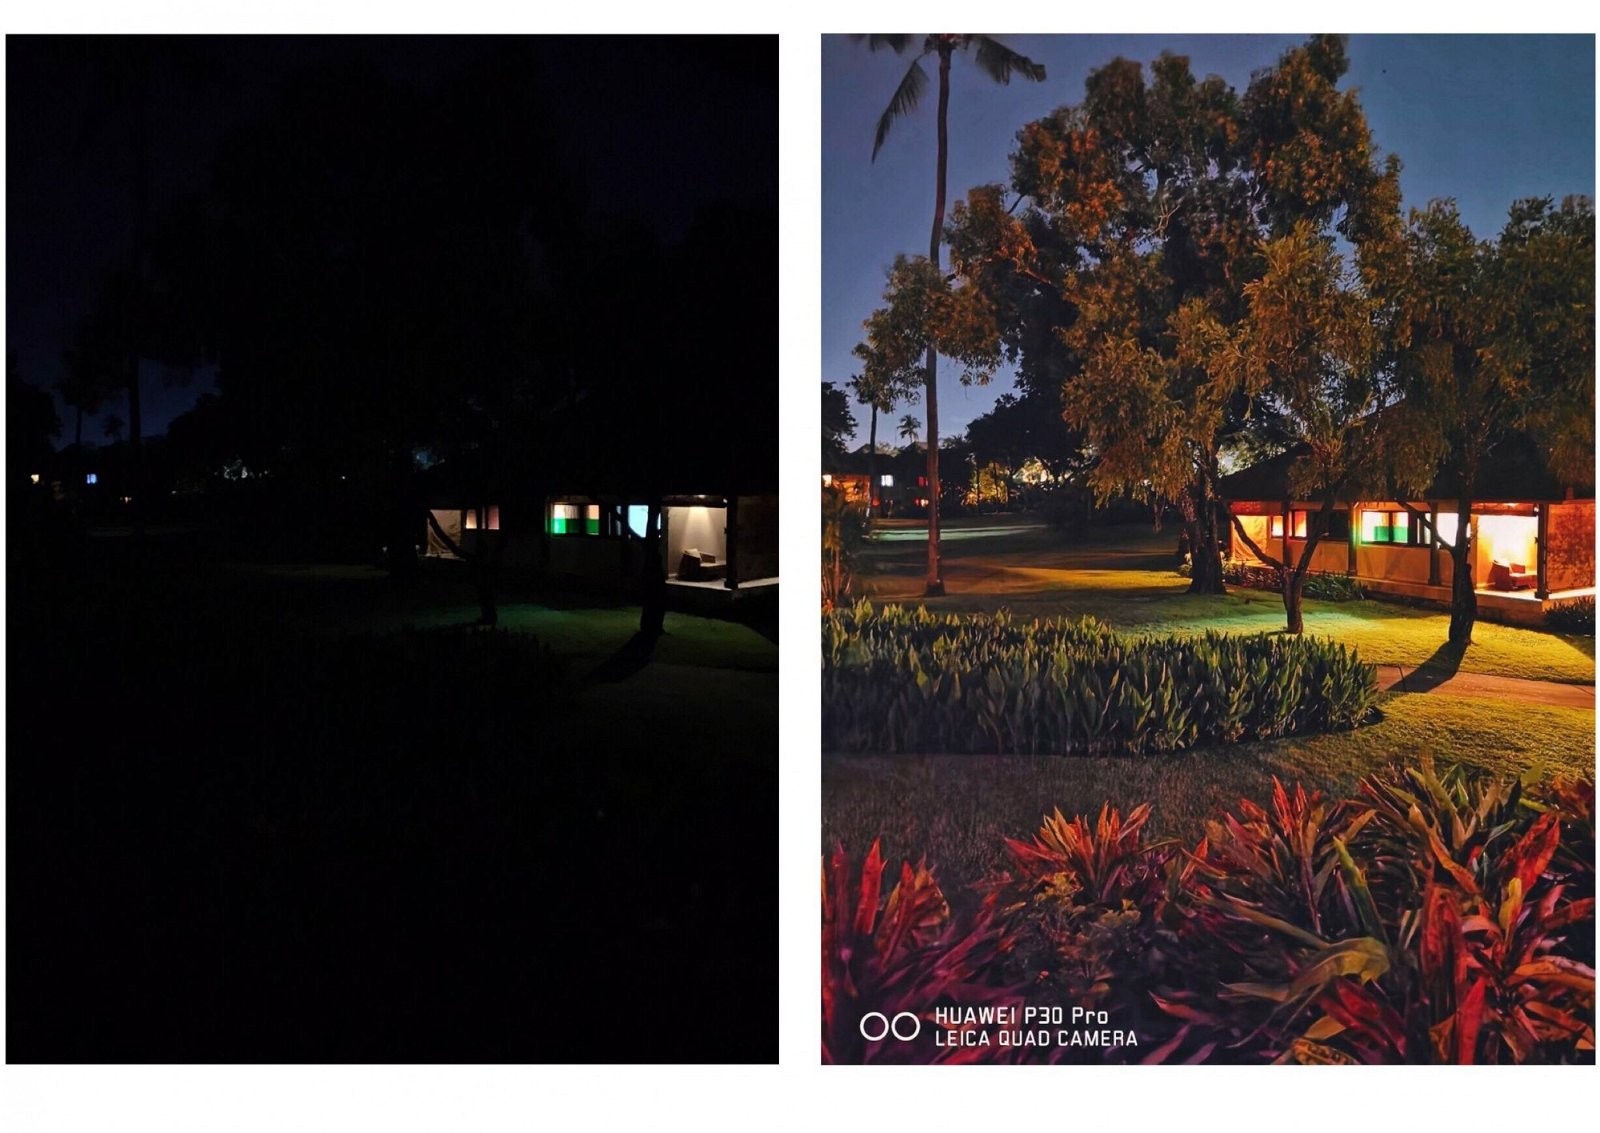 从左图可见,拍摄环境非常昏暗只能看到灯光,但华为P30Pro却将物体的细节都保留下来,甚至比肉眼看的更明亮。Photo by smashpop